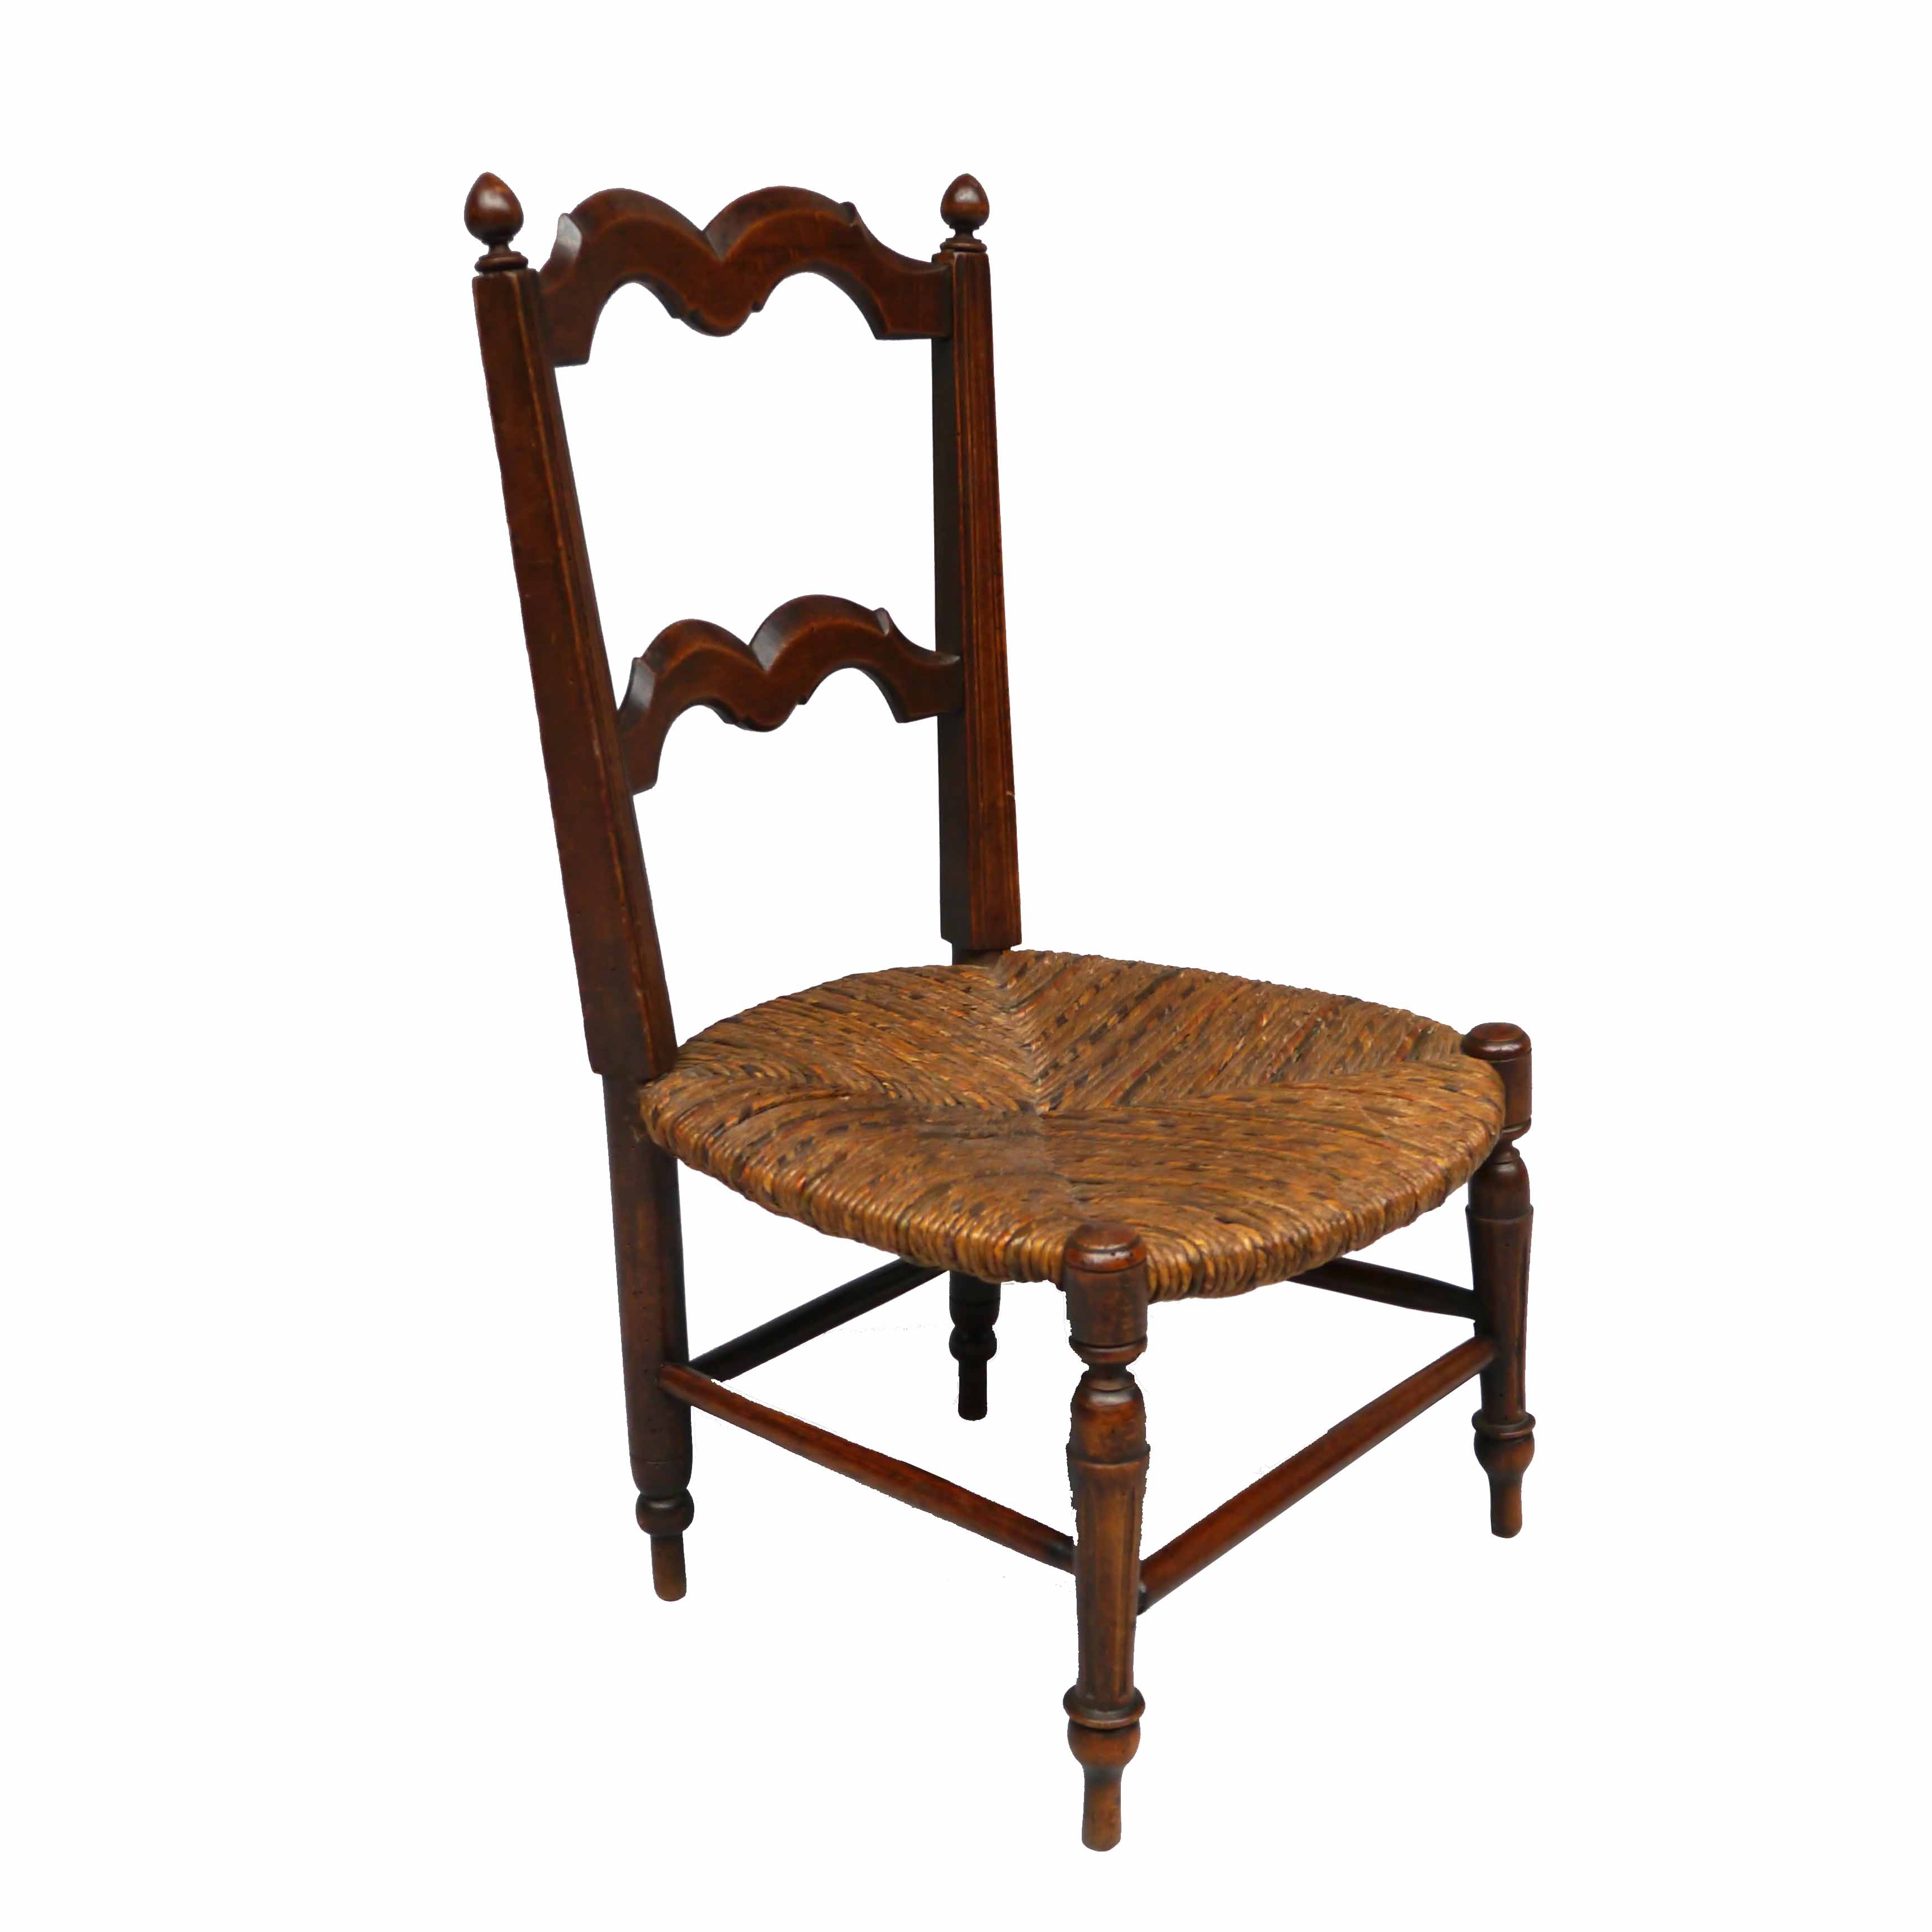 19th century french children’s chair